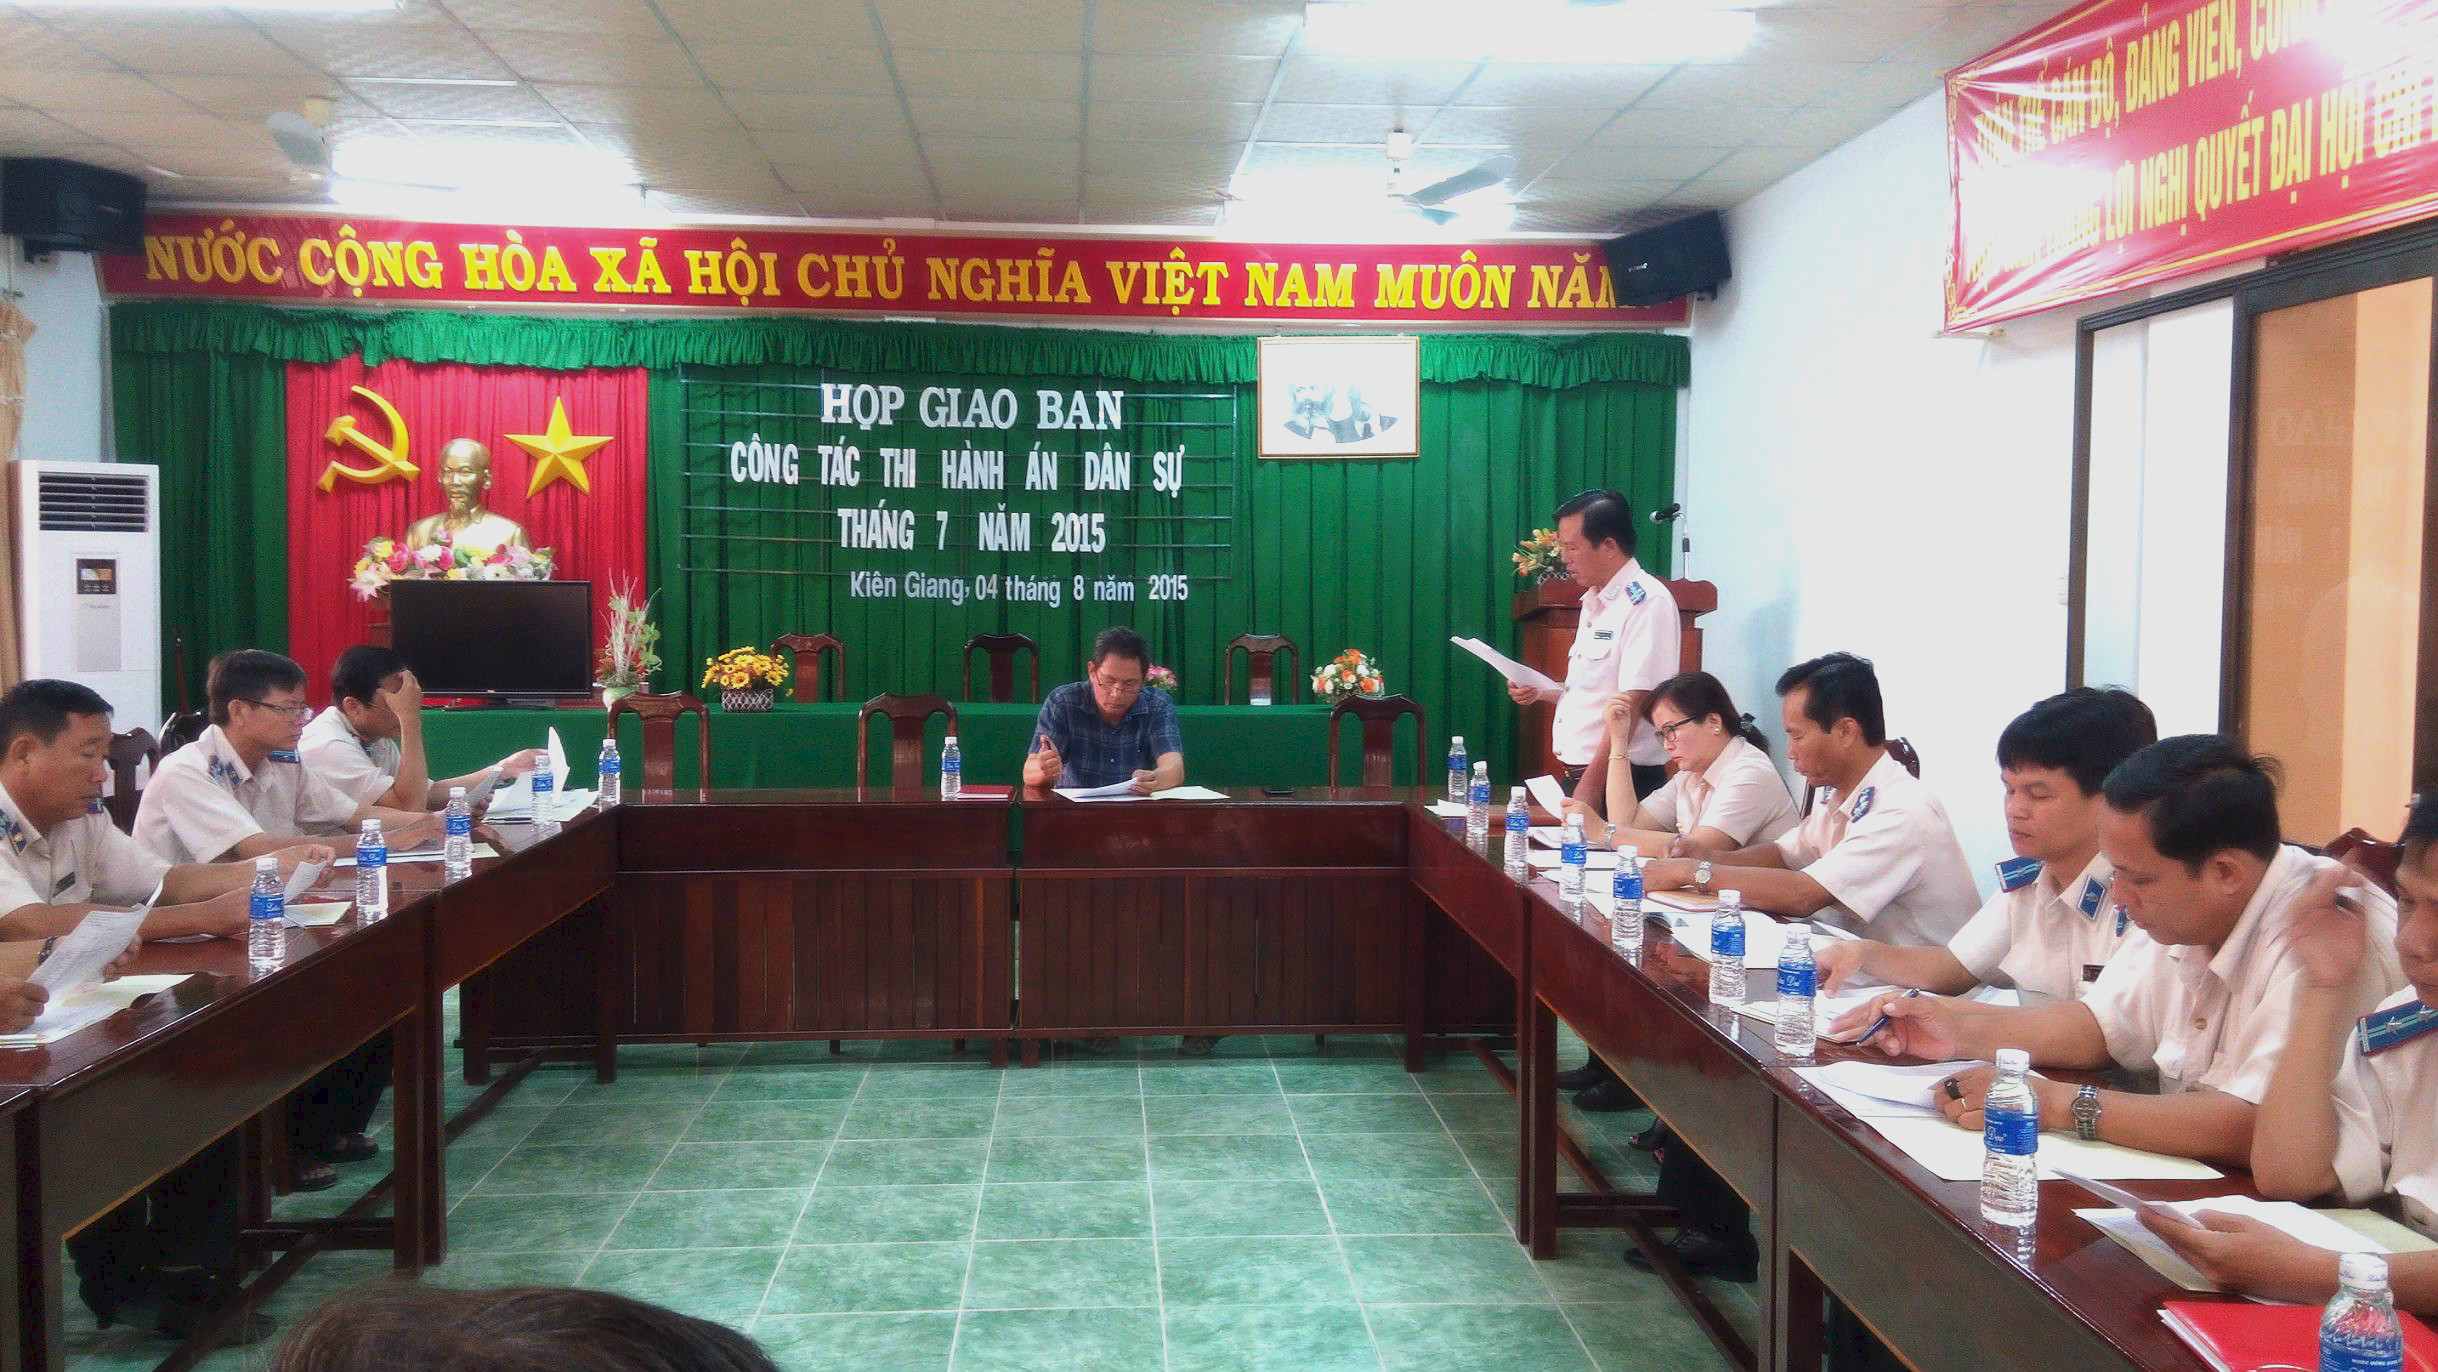 Cục Thi hành án dân sự tỉnh Kiên Giang giao ban công tác  tháng 7 năm 2015